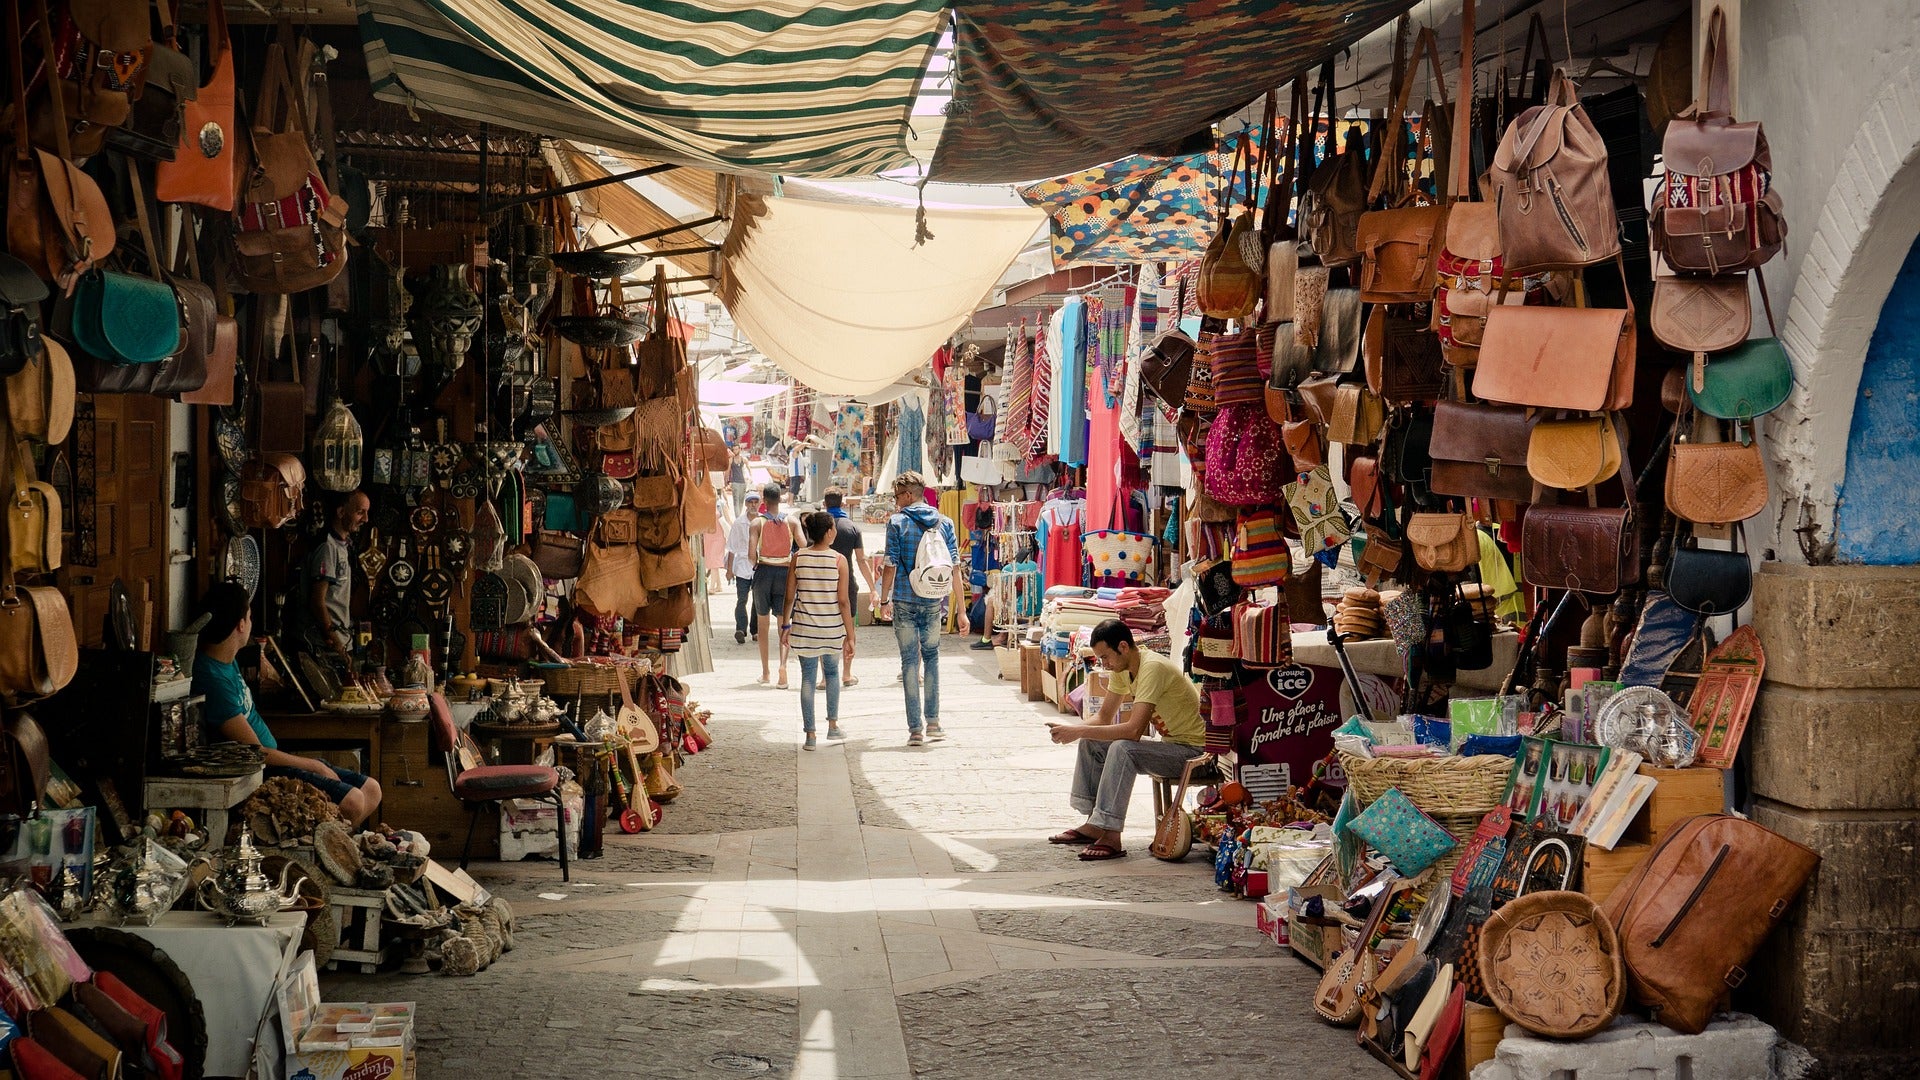 Zoco marroquí con distintos artículos de cuero como bolsos, cinturones, carteras, etc.